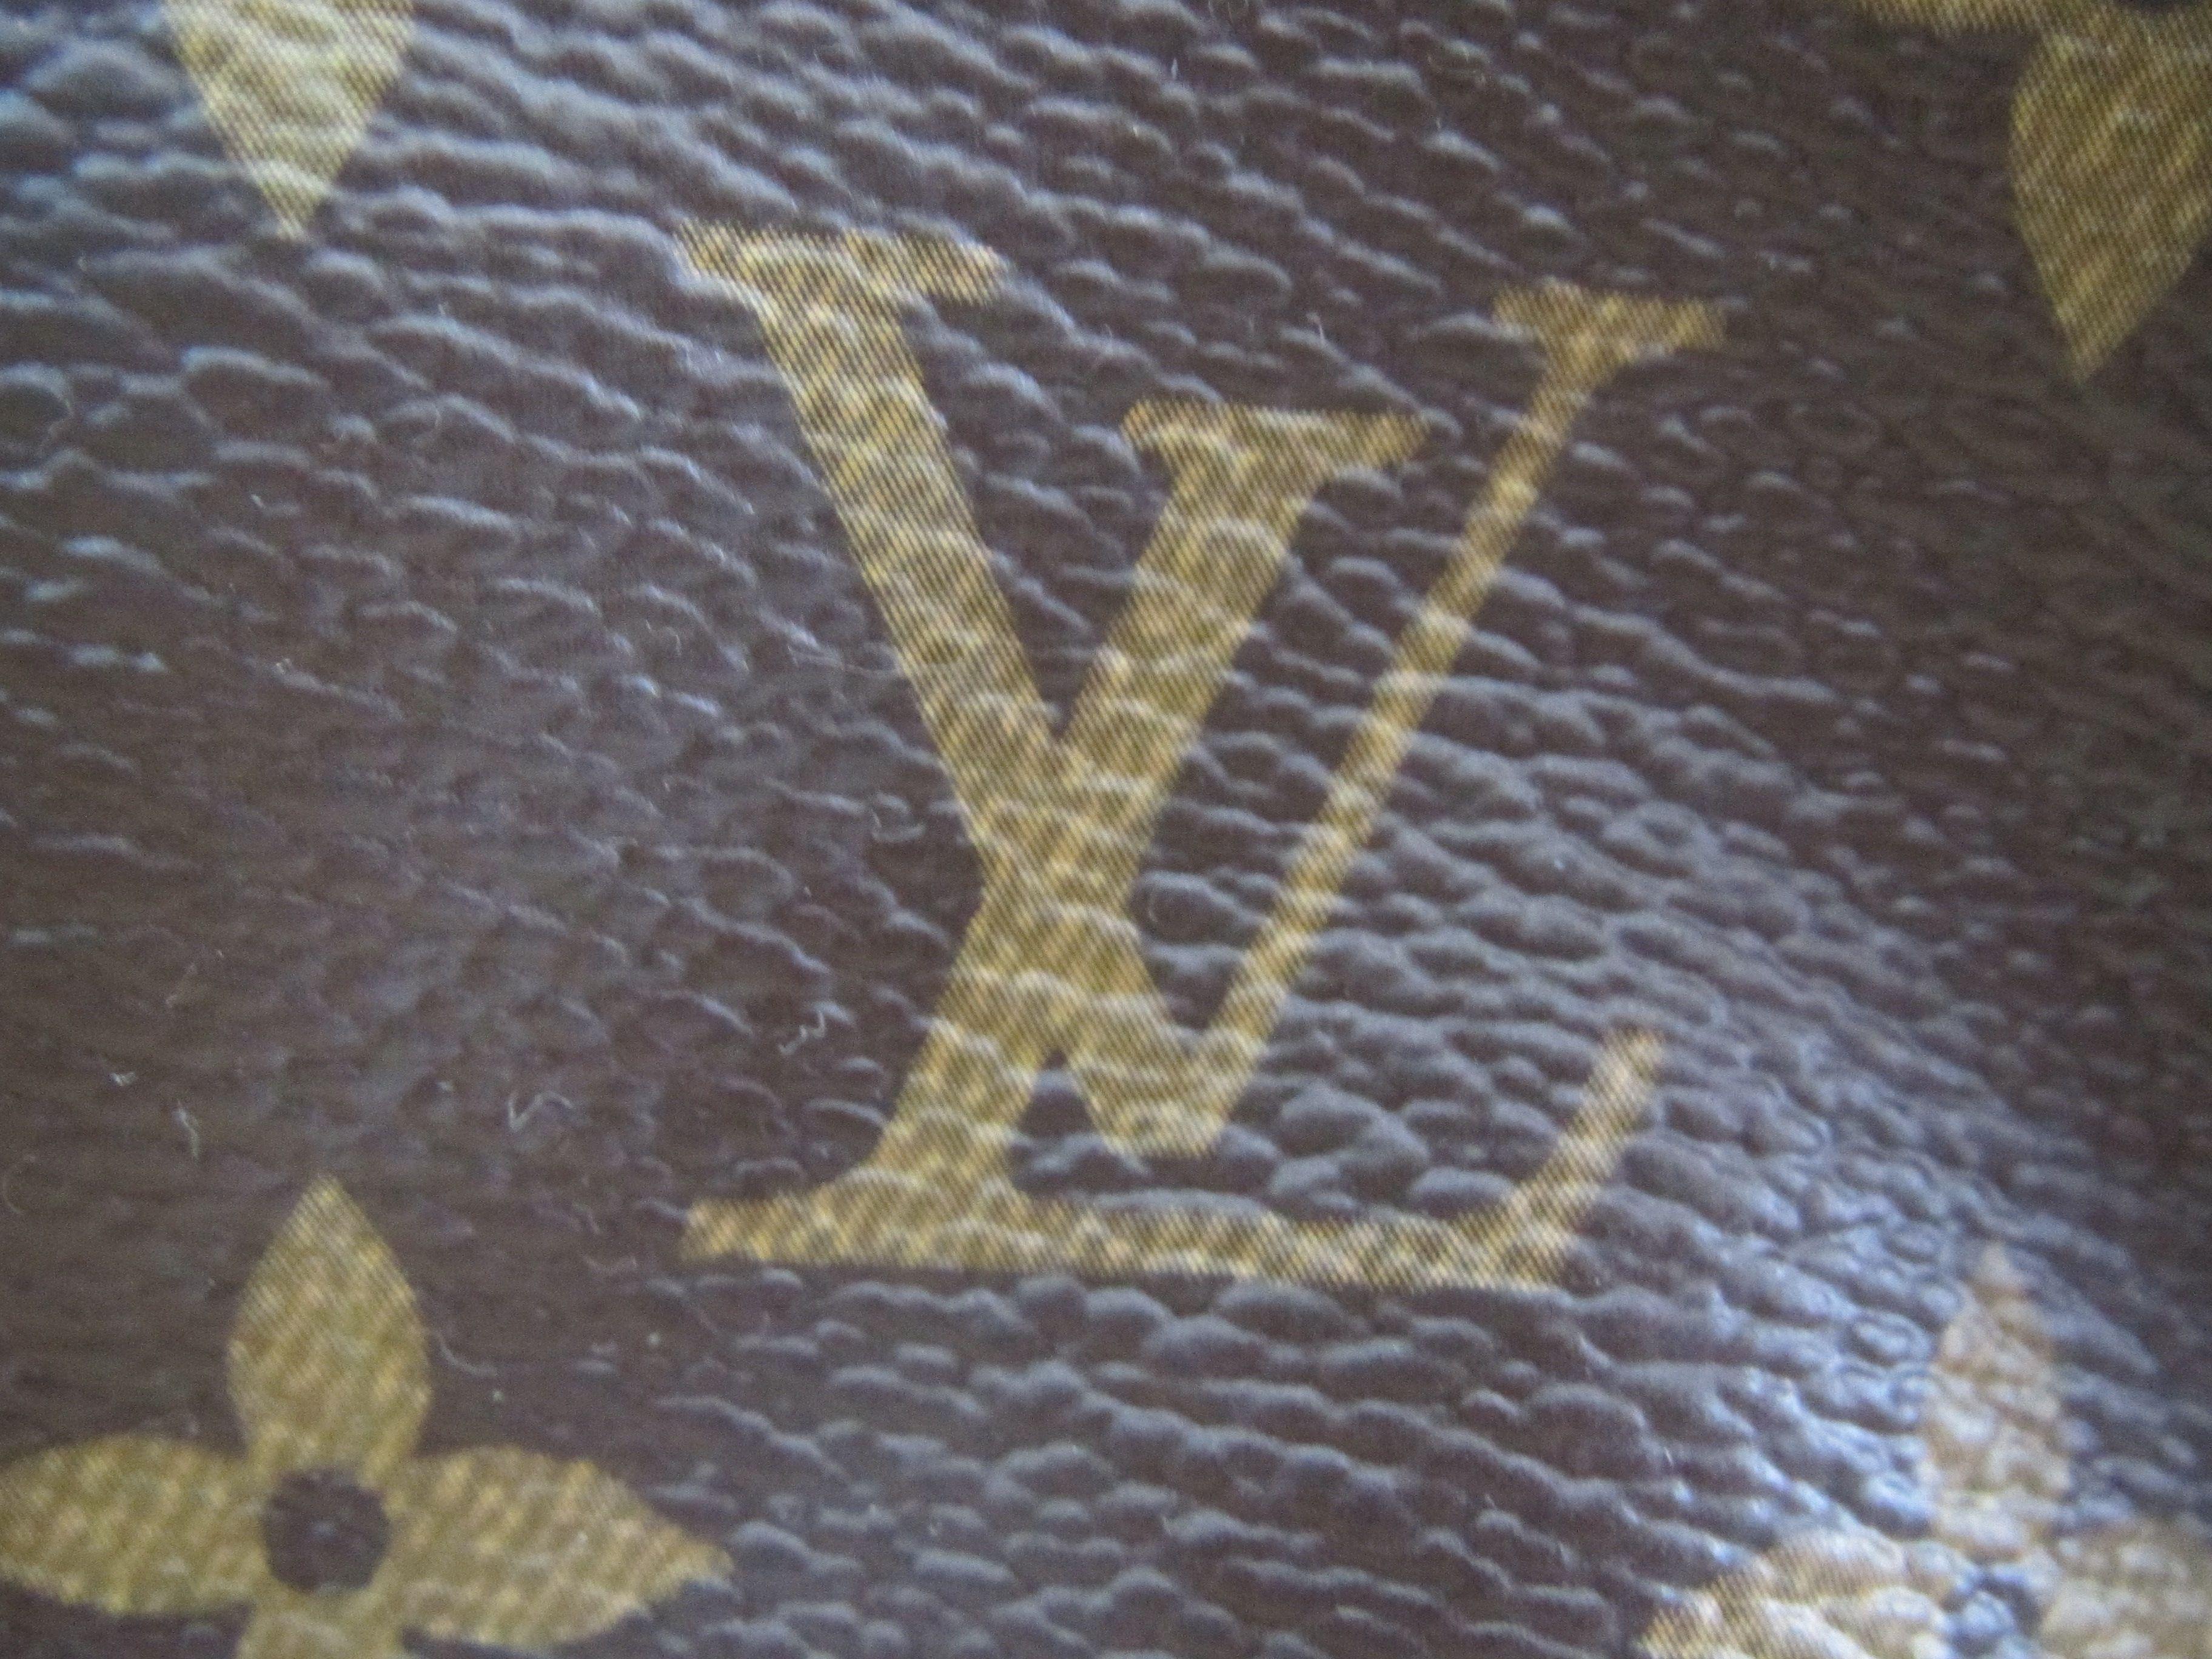 Louis Vuitton Leather Logo - 4 Ways to Spot Fake Louis Vuitton Purses - wikiHow